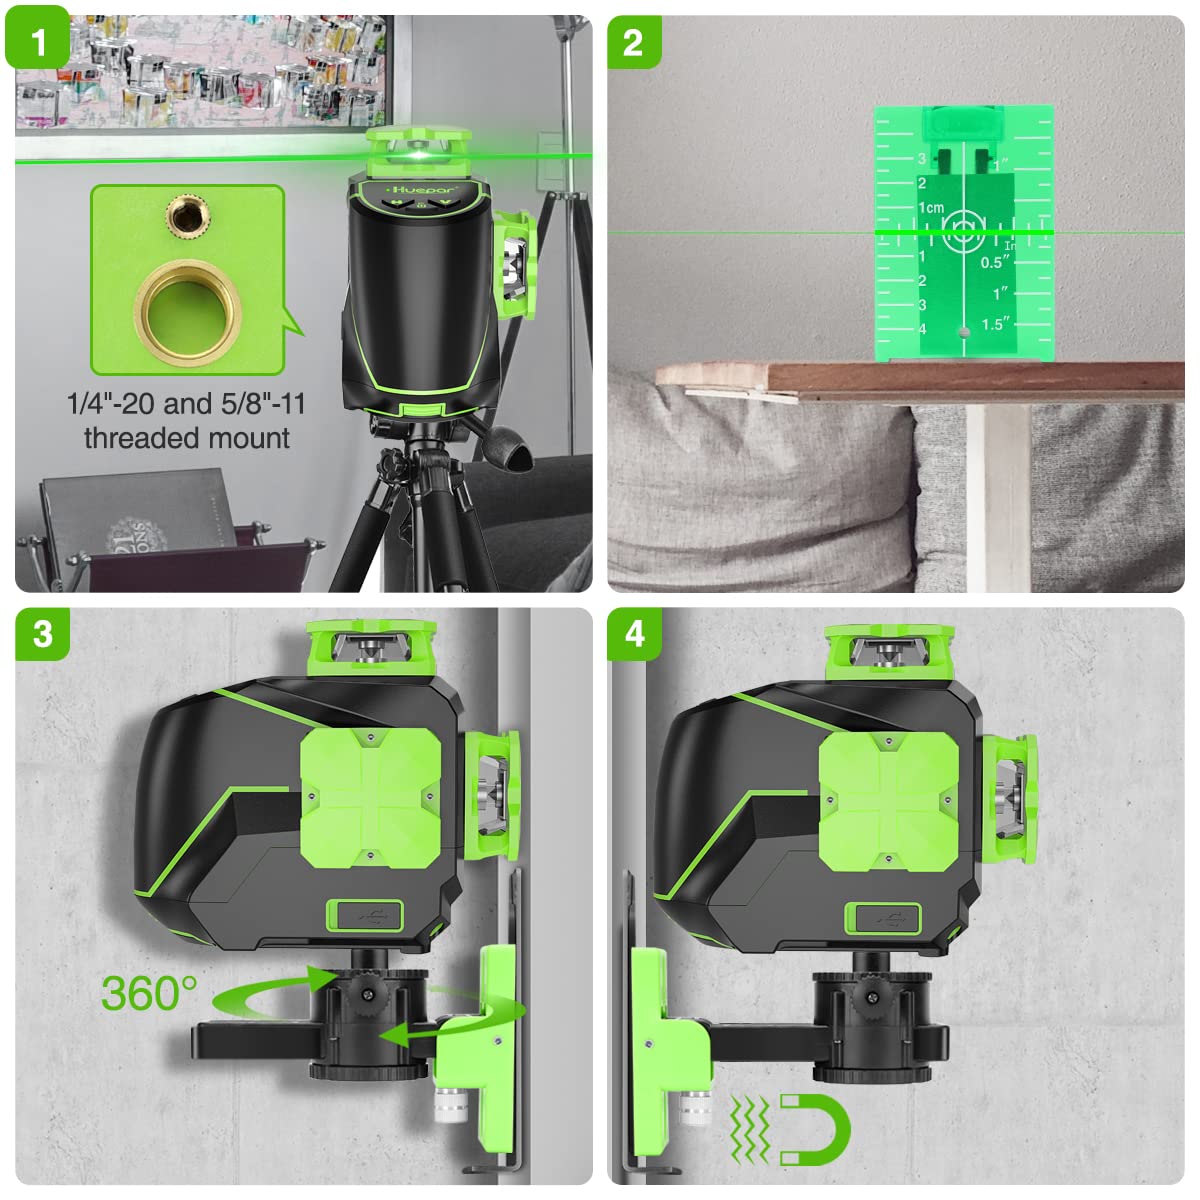 Huepar Nivel láser autonivelante 3D Green Beam 3 x 360 Línea cruzada de  tres planos herramienta de nivelación y alineación - Dos 360 verticales y  una